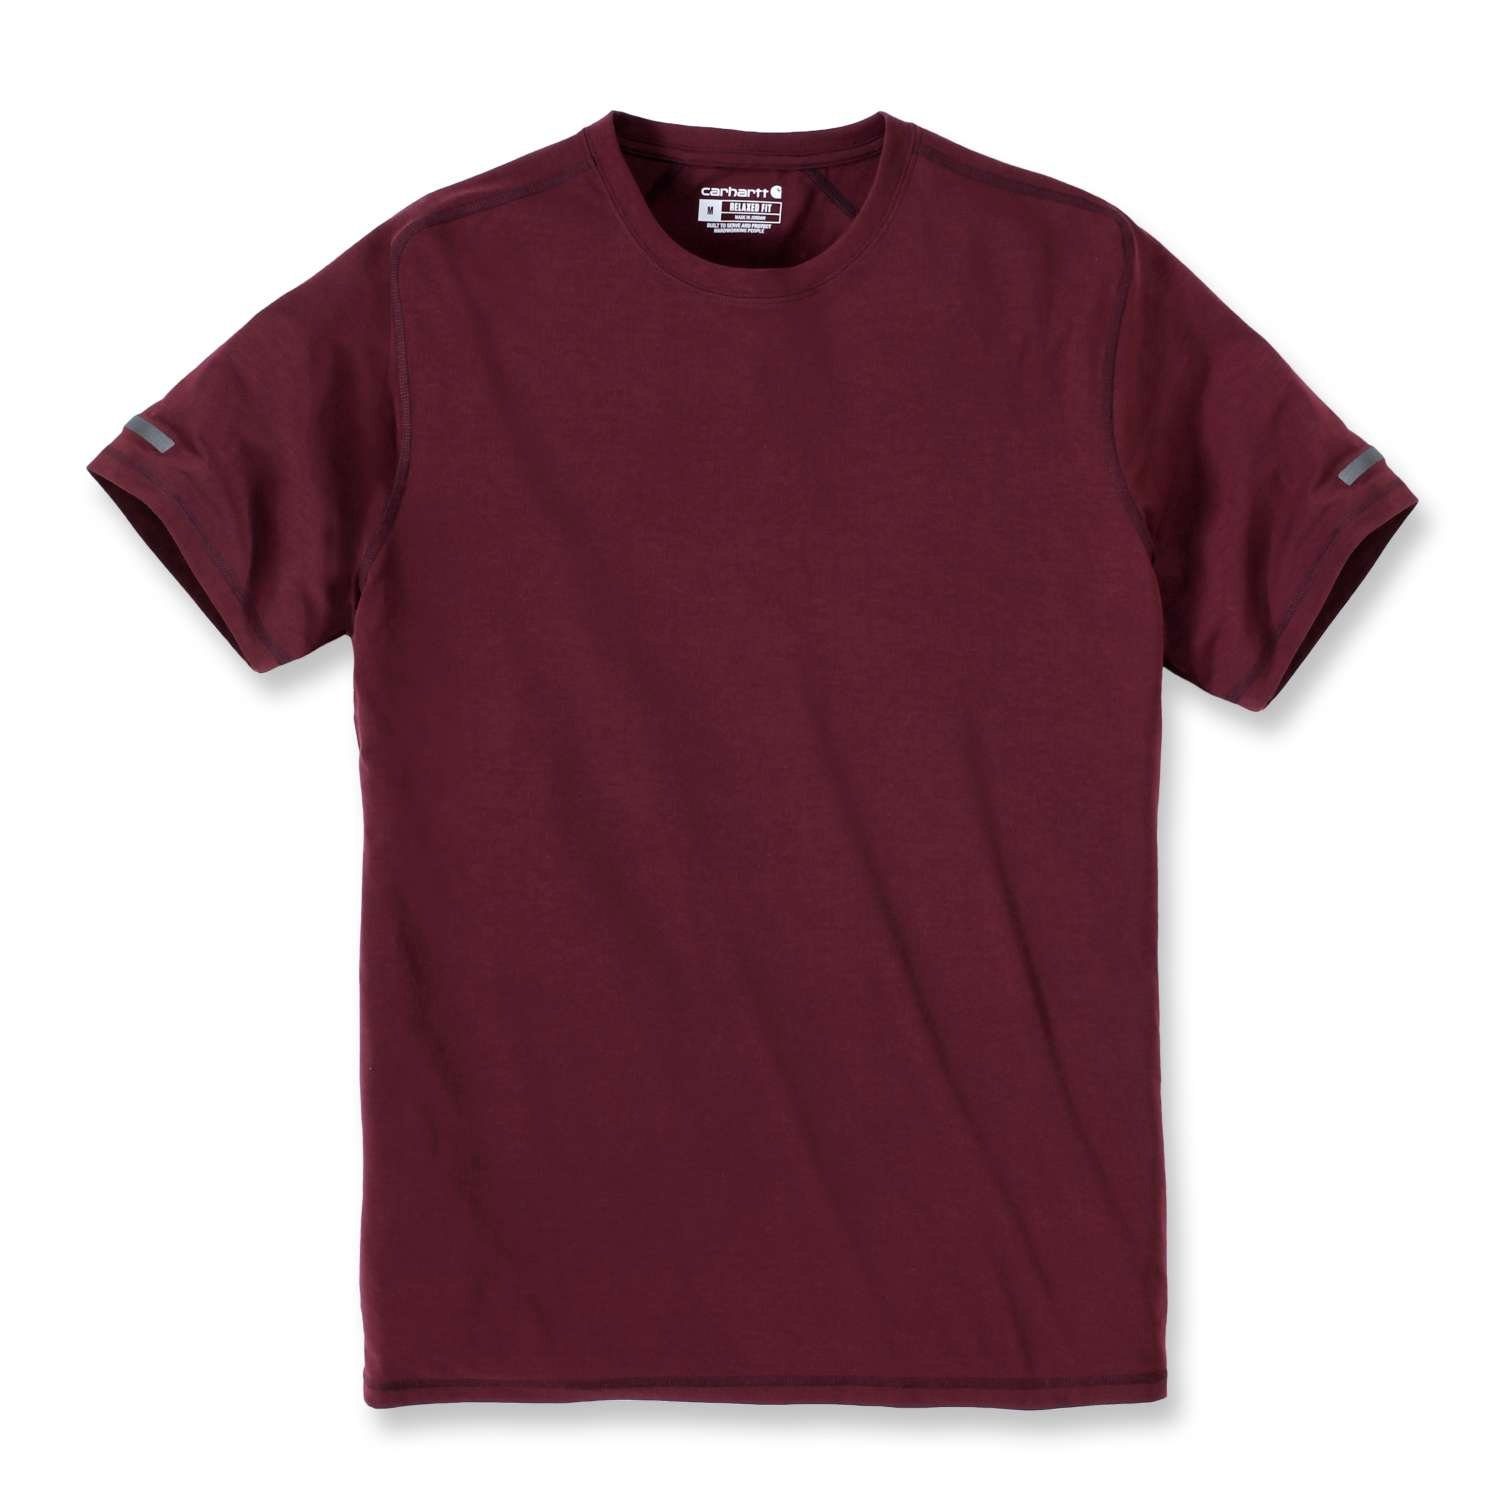 T-Shirt bordeaux Carhartt Adult Fit Extremes Herren T-Shirt Relaxed Carhartt